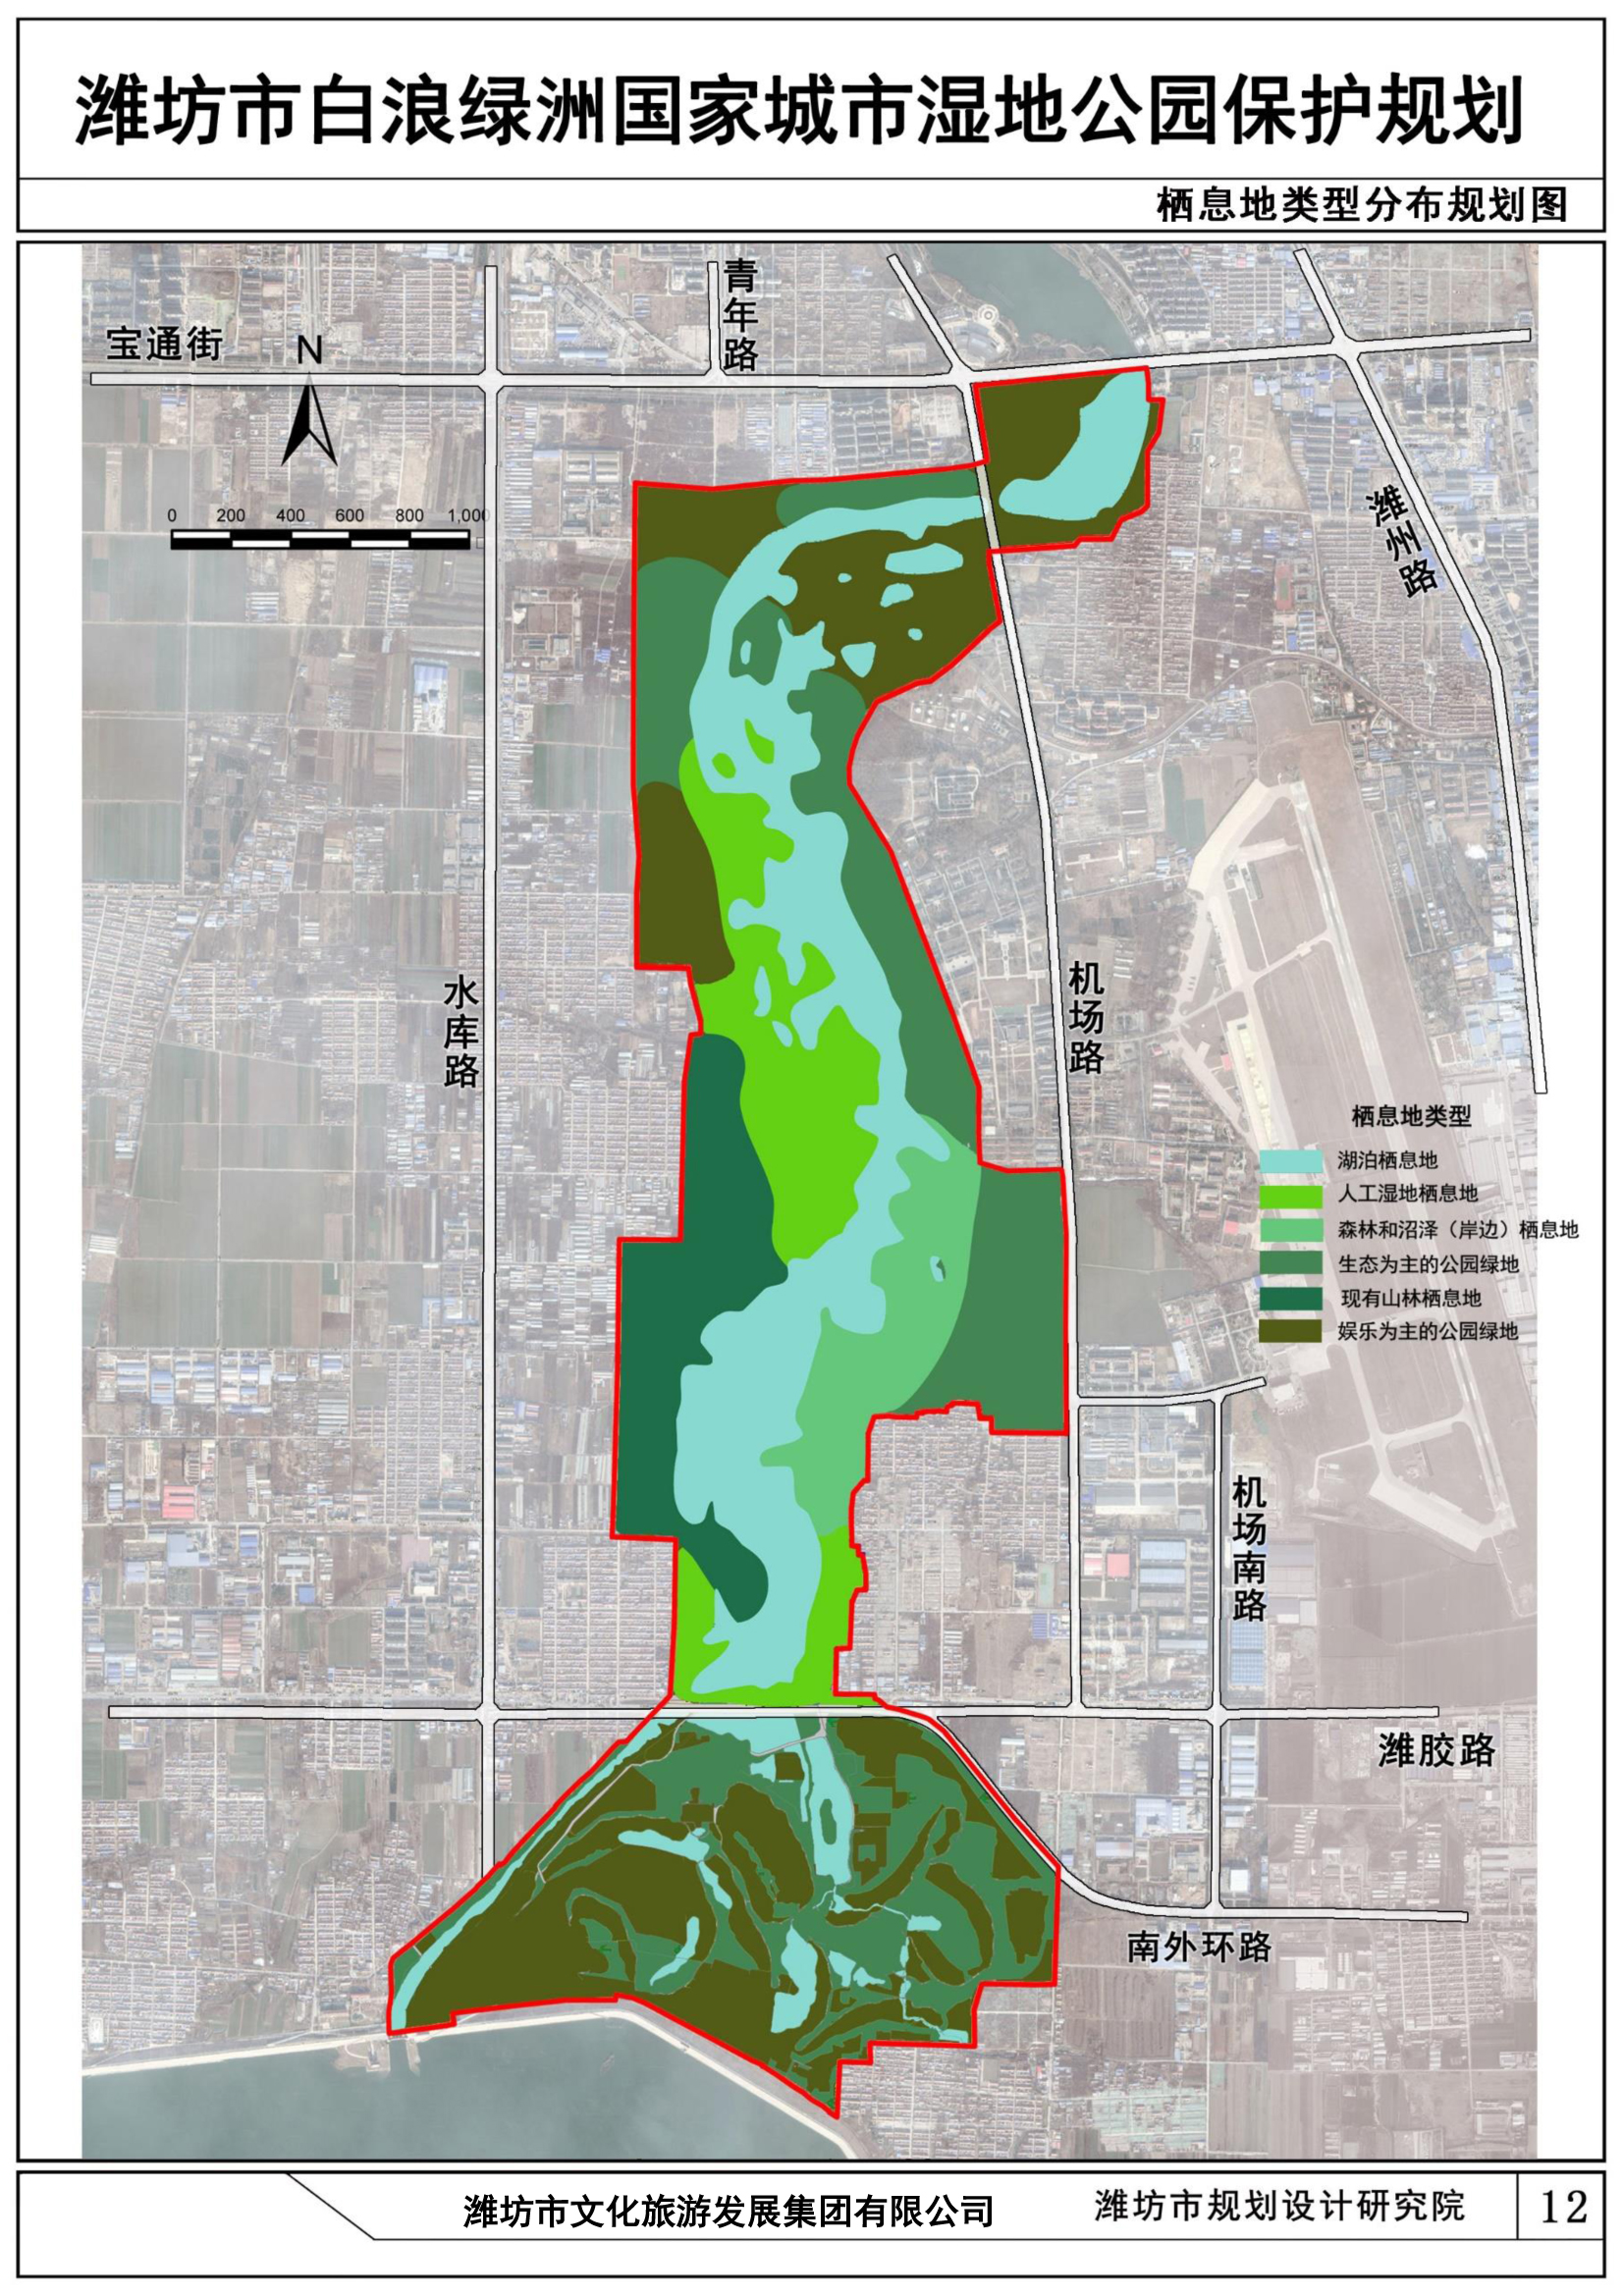 潍坊市白浪绿洲国家城市湿地公园保护规划规划方案公示